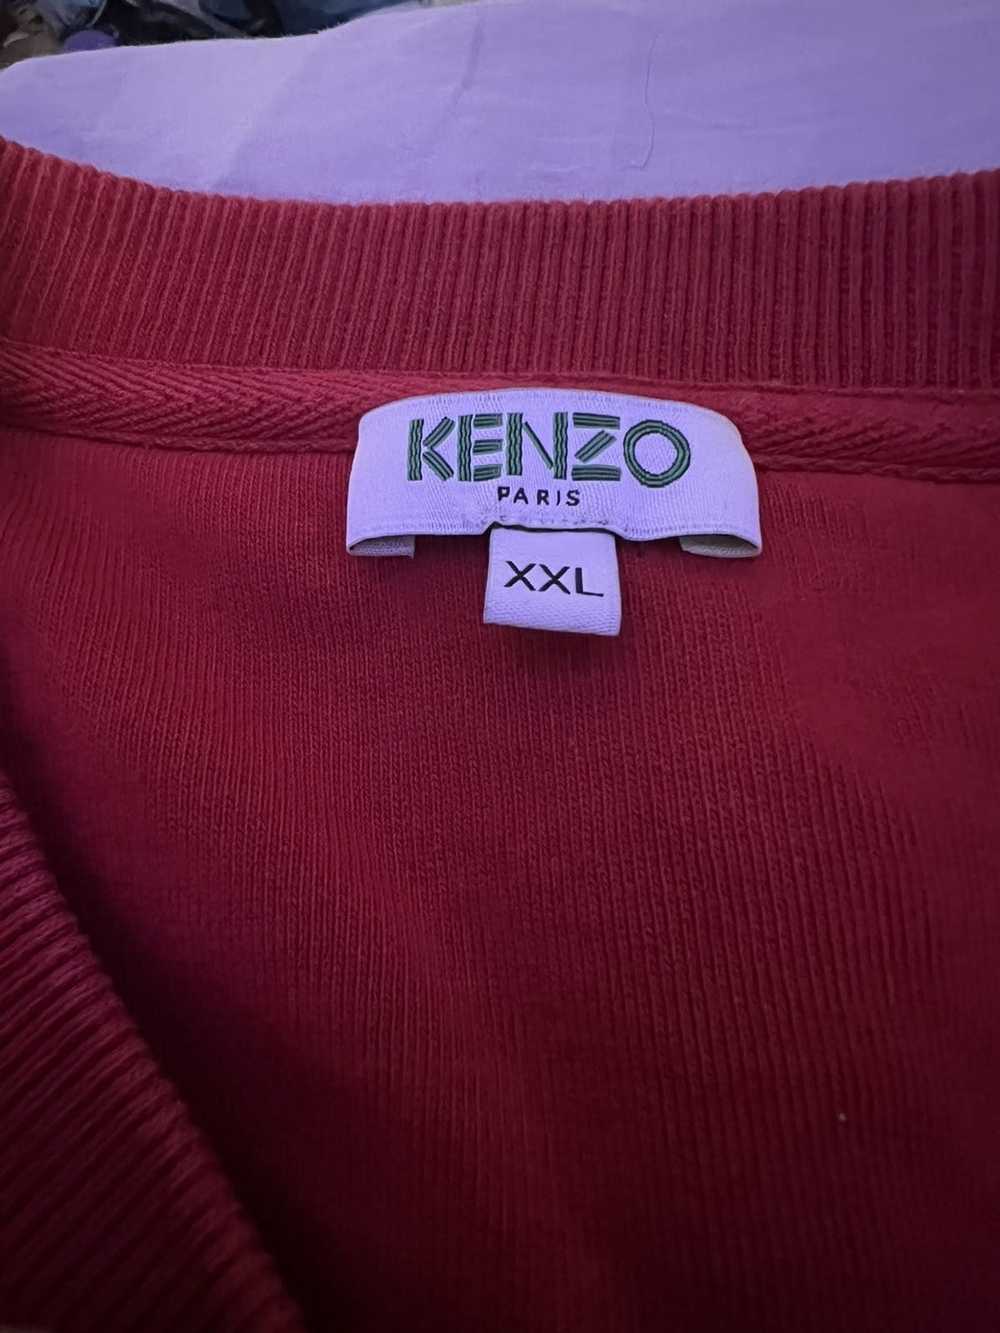 Kenzo Kenzo sweatshirt - image 2